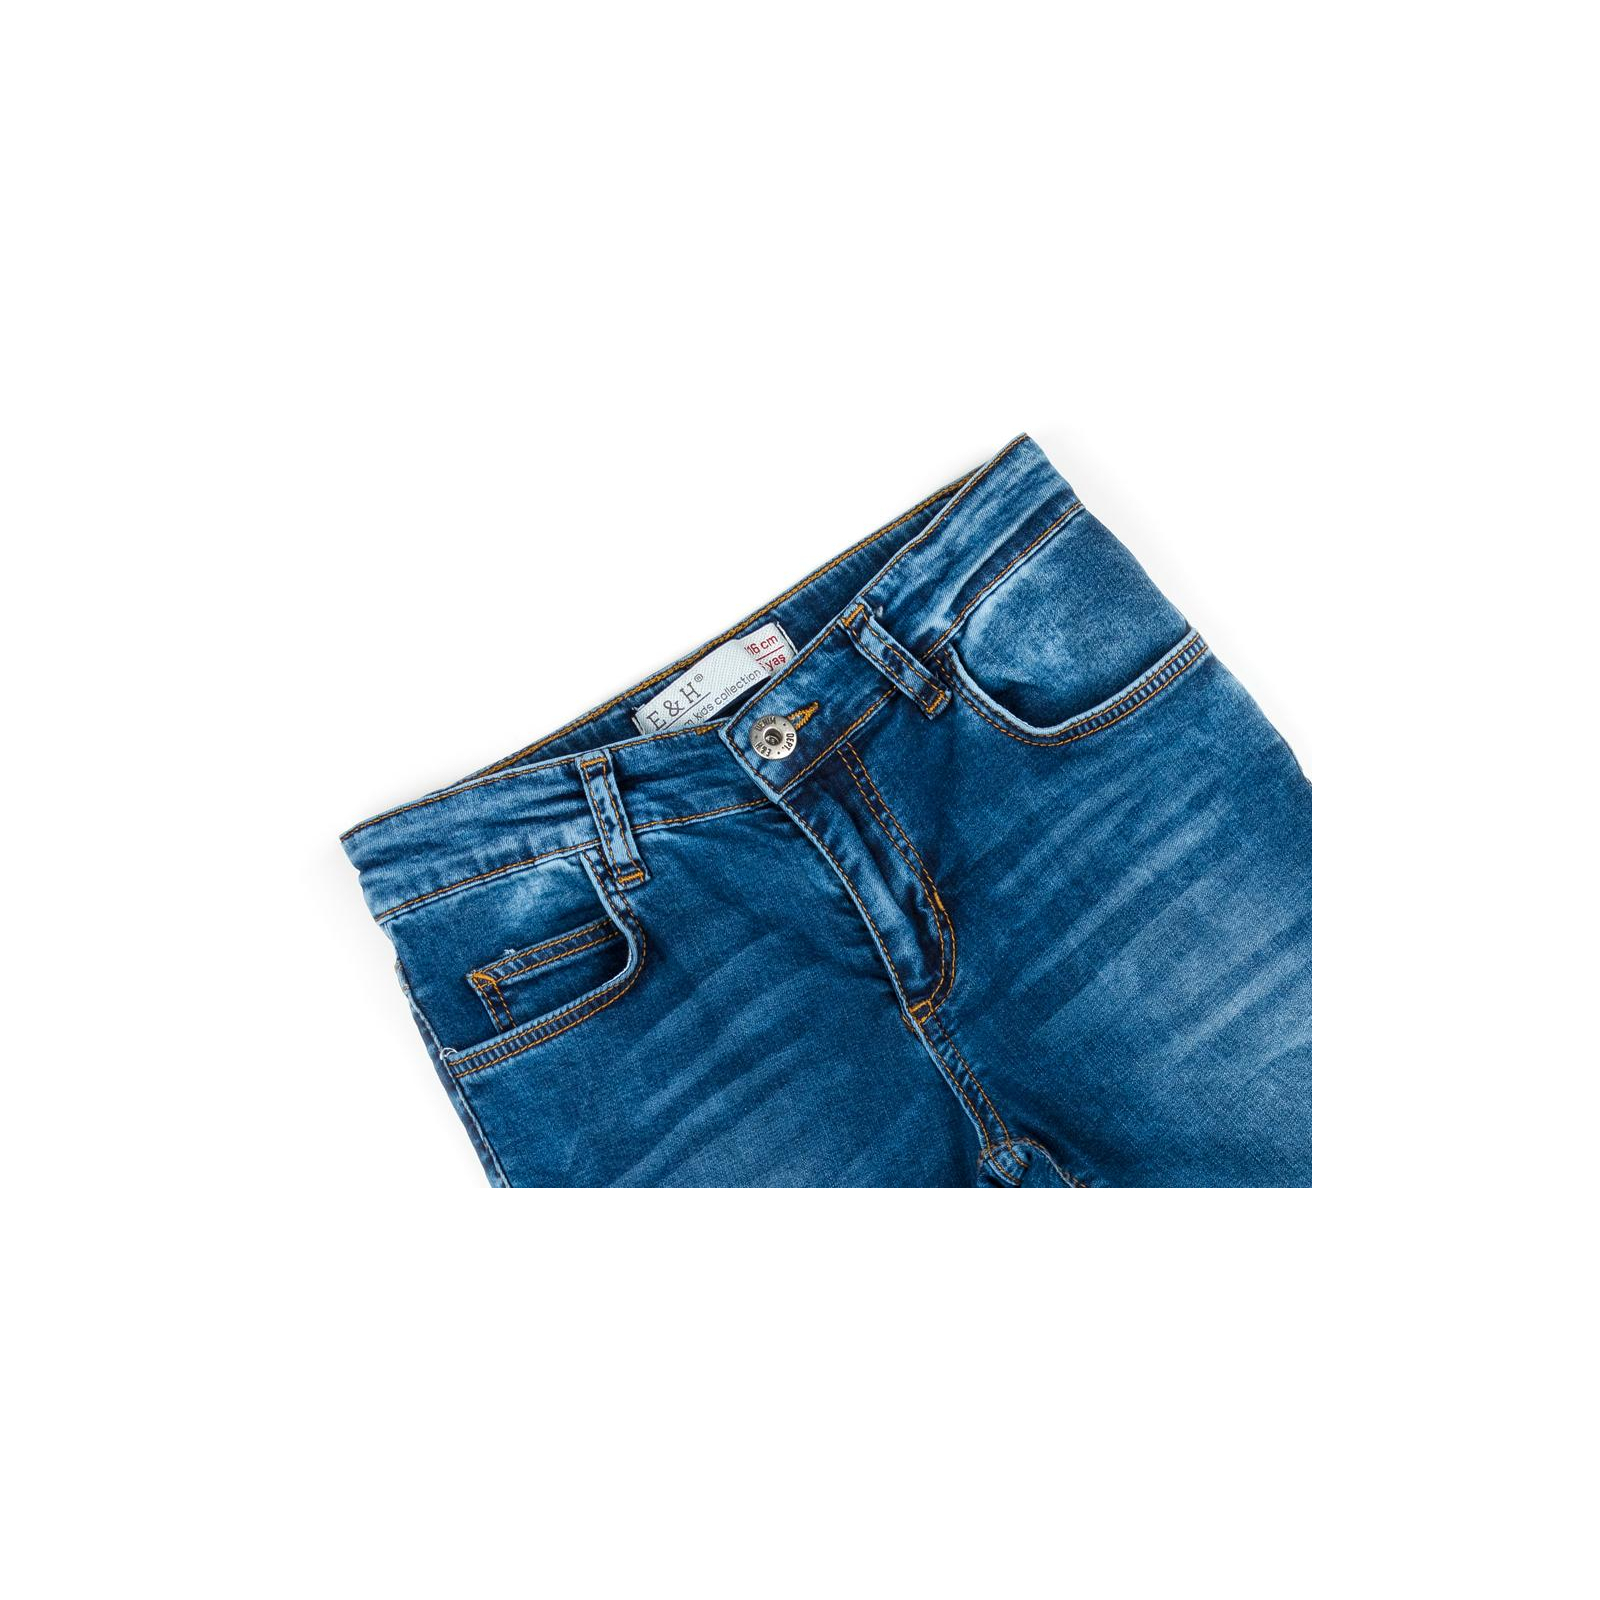 Штаны детские Breeze джинсовые (OZ-18611-152B-blue) изображение 3